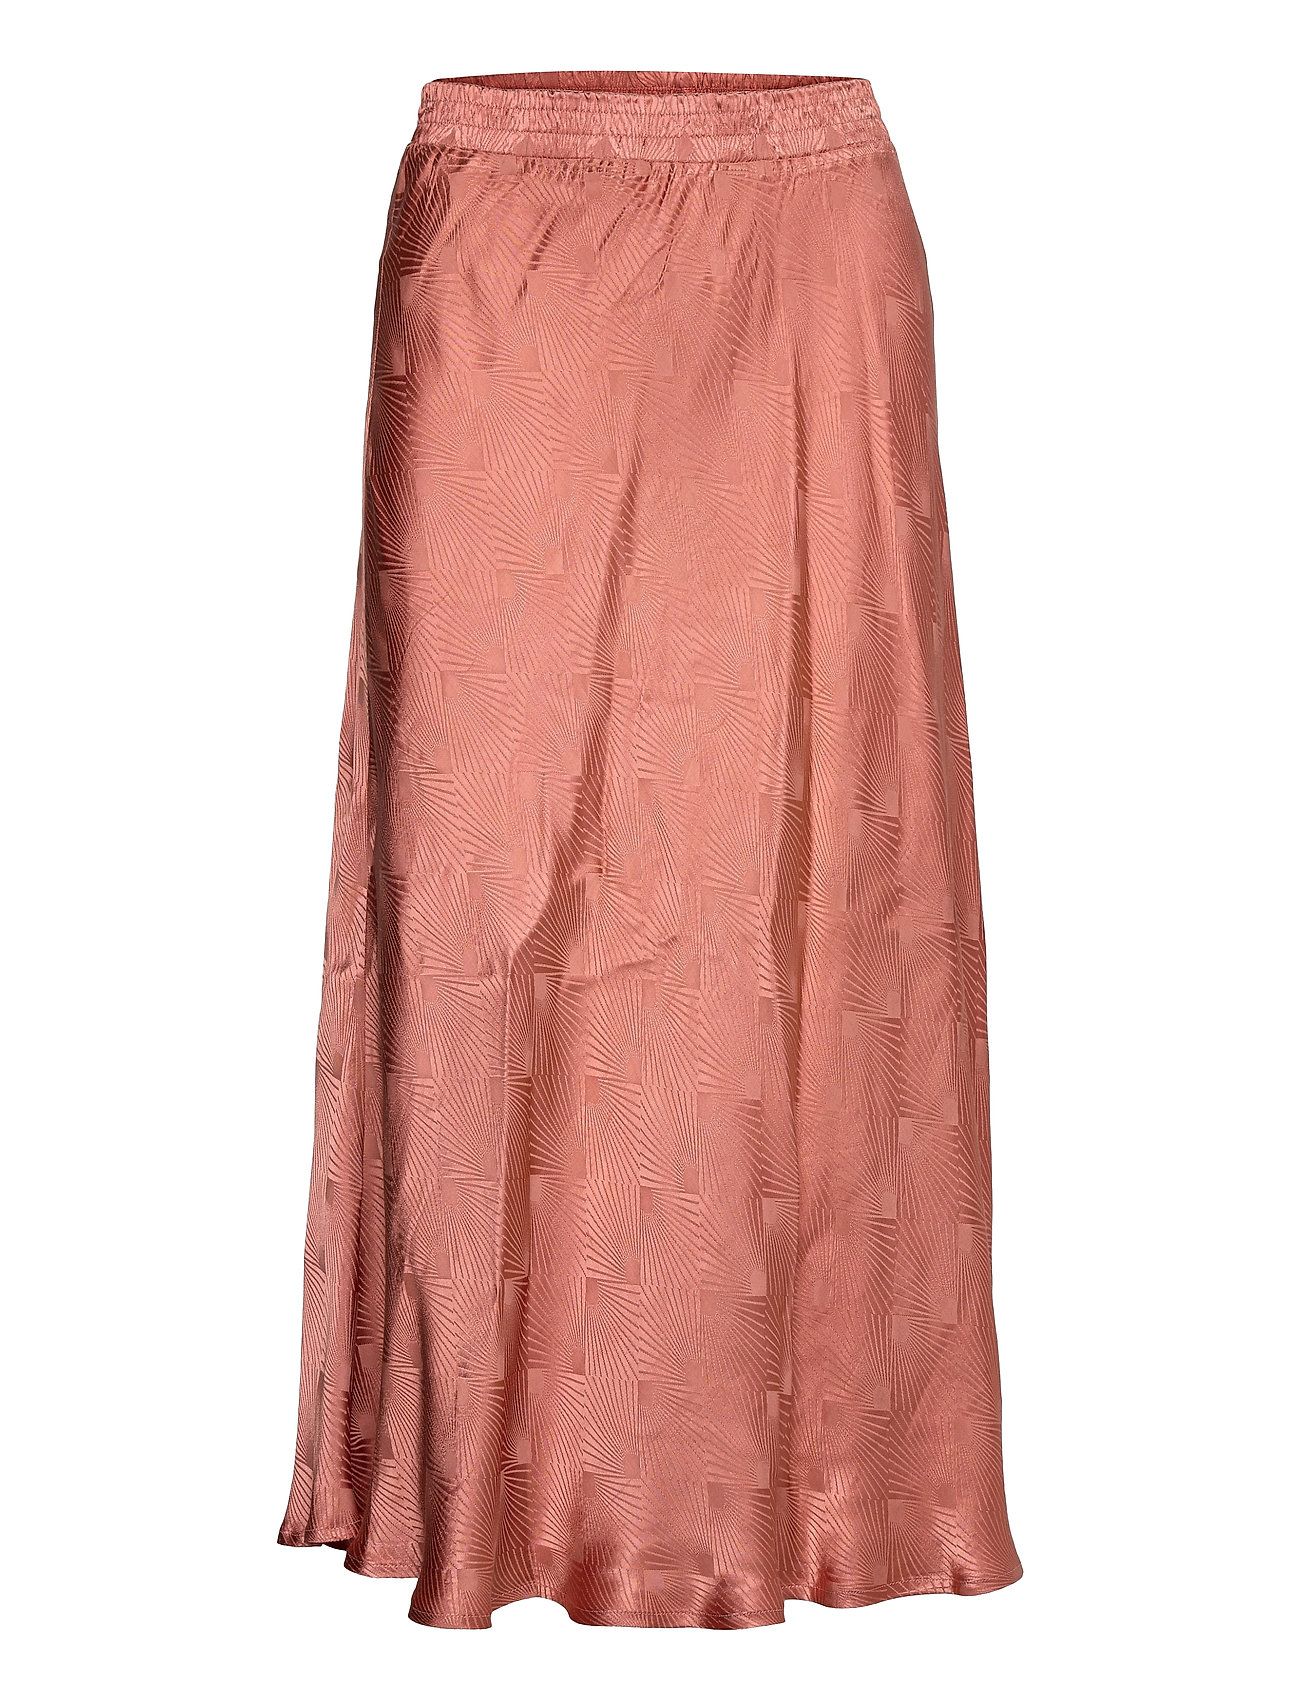 arabisk auditorium Dempsey Coster Copenhagen Draped Skirt With Bias Cut (Tanned Brick), 215.76 kr |  Stort udvalg af designer mærker | Booztlet.com